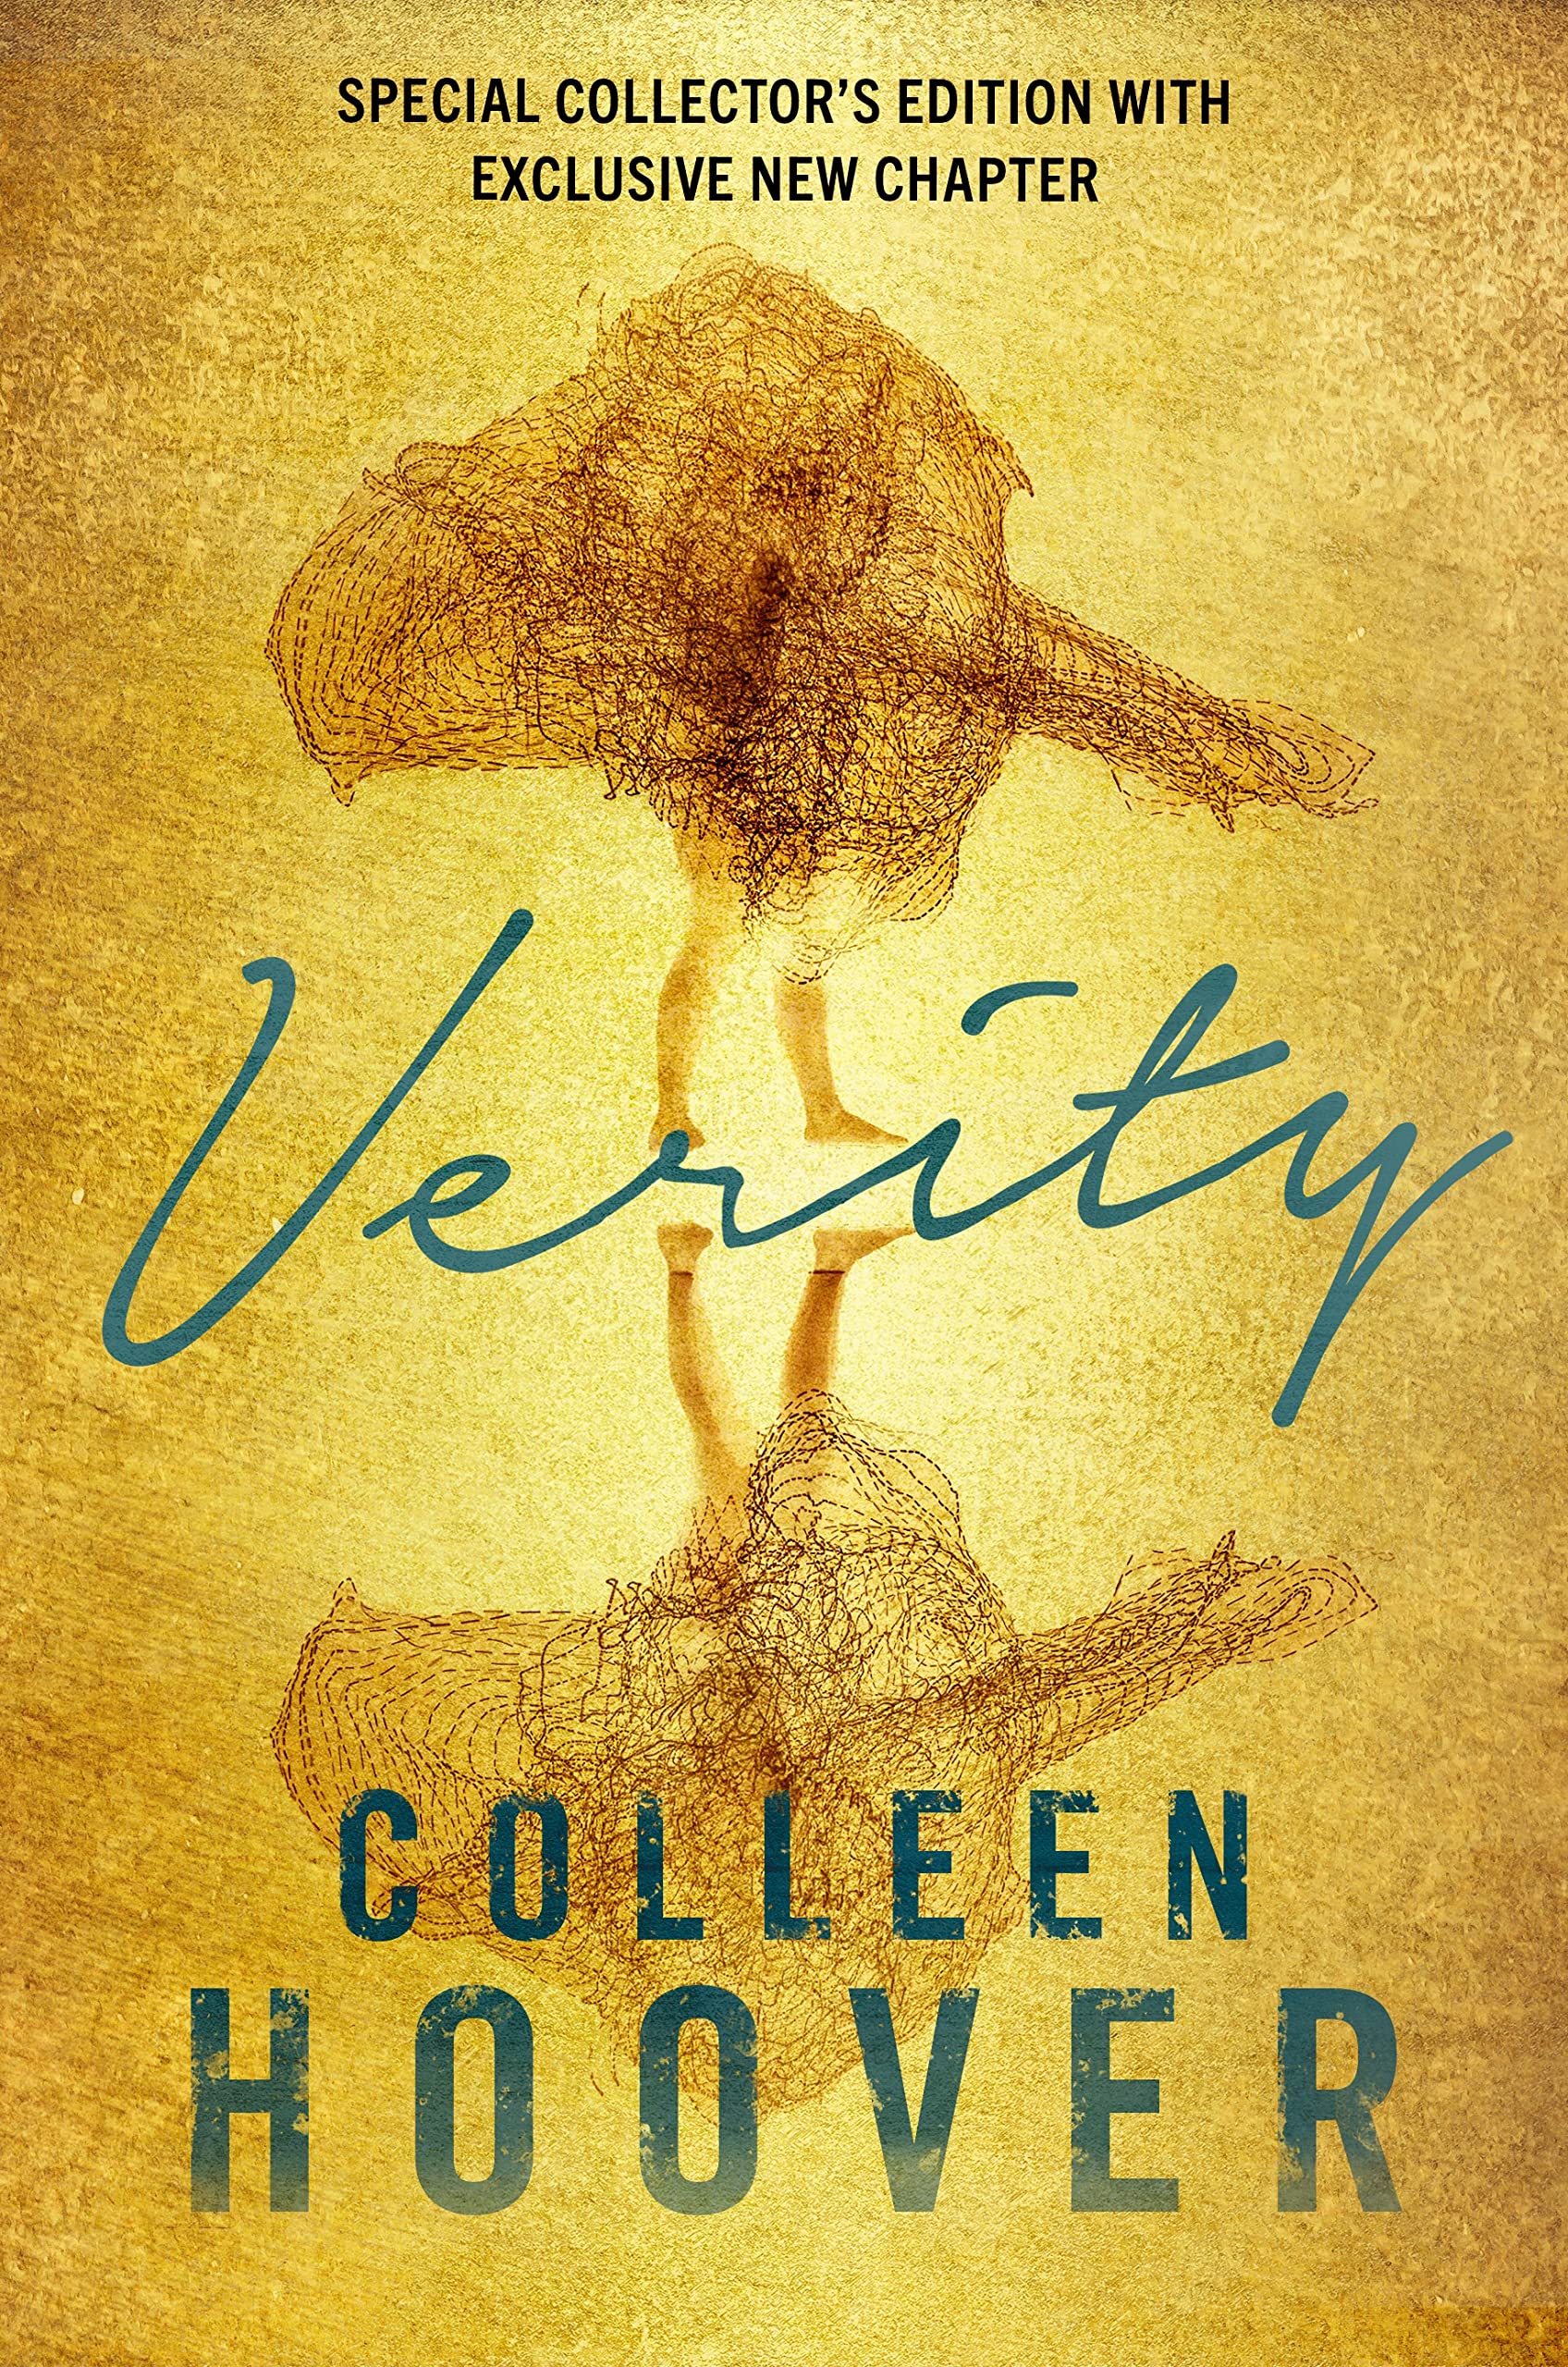 Verity | Colleen Hoover